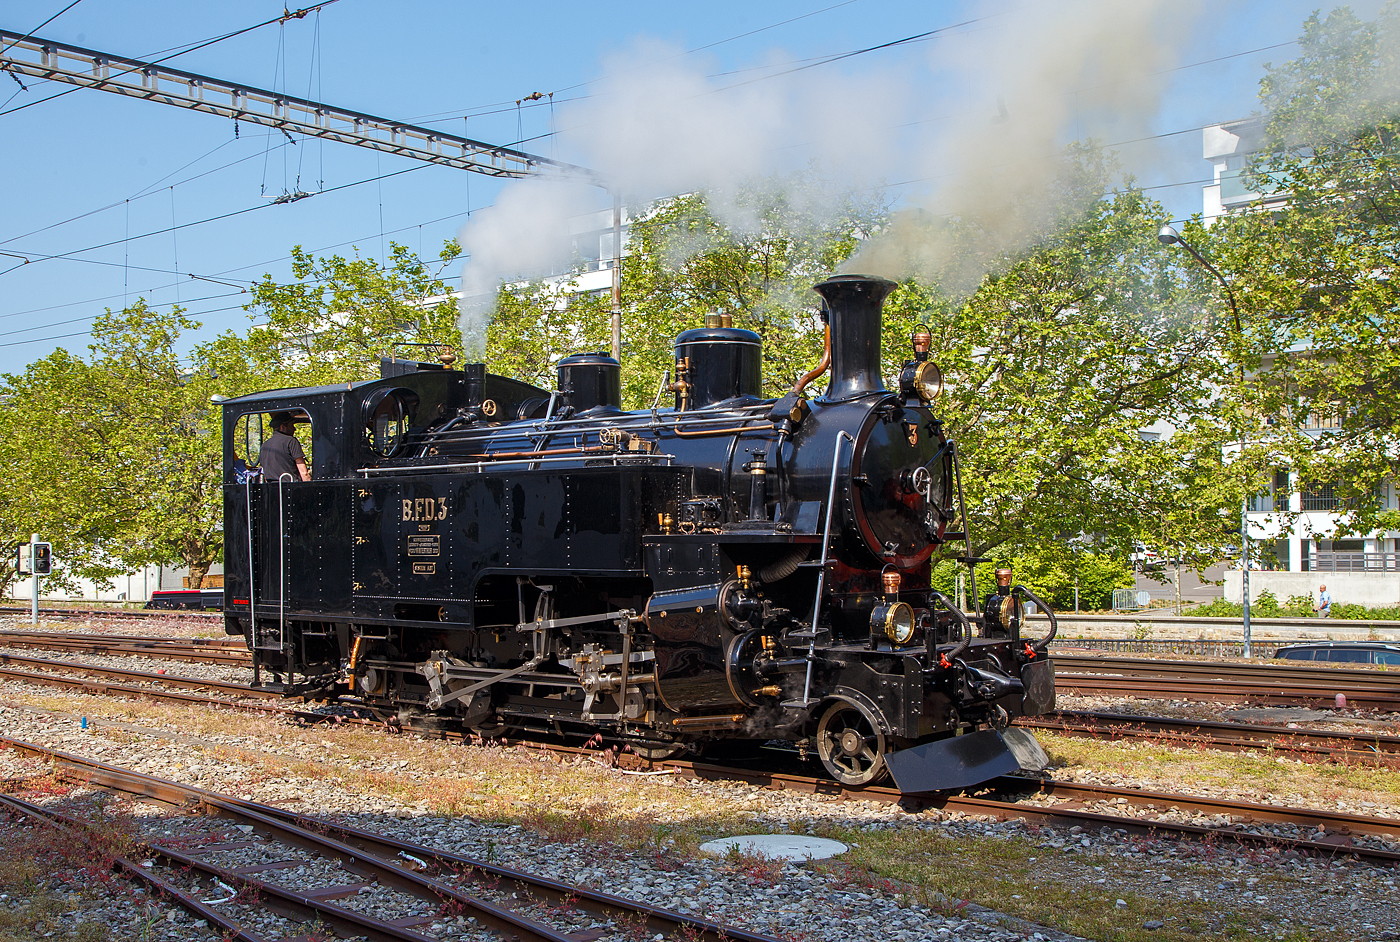 Es raucht und dampft in Vevey...
Die Dampflokomotive für gemischten Adhäsions- und Zahnradbetrieb BFD 3 HG 3/4 (Brig–Furka–Disentis-Bahn), später FO 3 (Furka-Oberalp-Bahn), heute im Bestand der Museumsbahn Blonay–Chamby, rangiert am 28.05.2023 in Vevey. Am Pfingstwochenende fand bei der das Schweizer Dampffestival 2023 / Festival suisse de la Vapeur 2023 statt.

Die Lok Nr. 3 wurde 1969 der Museumsbahn Blonay–Chamby (BC) geschenkt, während Nr. 4 als Reserve weiterhin bei der Furka-Oberalp-Bahn (FO) blieb und hauptsächlich für Nostalgiefahrten verwendet wurde. Mit Ablauf der Untersuchungsfristen wurde sie (FO 4) 1972 abgestellt. Nach einigen Stationen ging die Lok 4 im Jahr 1997 zunächst leihweise an die Dampfbahn Furka-Bergstrecke über. Anschließend wurde sie in der DFB-Werkstätte betriebsfähig aufgearbeitet und 2006 in Betrieb genommen. Die Lok wurde historisch korrekt restauriert und vollständig schwarz lackiert. Anlässlich der Eröffnung des Streckenabschnitts Gletsch–Oberwald im Jahr 2010 ging die Lok als Geschenk an die DFB über.

Auch die ehemaligen FO Loks 1 und 9, sowie Überresten der Loks 2 und 8, sind heute bei der Dampfbahn-Furka-Bergstrecke. Unter der Bezeichnung „Back to Switzerland“ kehrten die vier HG 3/4 aus Vietnam 1990 Jahre in die Schweiz zurück.

Die HG 3/4 Dampflokomotiven haben vier Zylinder, zwei außenliegende für den Adhäsionsantrieb und zwei innenliegende für den Zahnradantrieb. 

TECHNISCHE DATEN:
Länge über Puffer: 8.754 mm
Dienstgewicht: 42 t
Triebraddurchmesser: 910 mm
Laufraddurchmesser: 600 mm
Zahnrad Teilkreis: 688 mm
Zahnrad Zähne/Teilung: 18 Zähne / 120 mm (Abt 2-lamellig)
Anhängelast 110 ‰ Steigung: 60 t
Max. Geschwindigkeit Adhäsion: 45 km /h
Max. Geschwindigkeit Zahnrad: 20 km/h
Leistung: 600 PS (440 kW)
Antriebssystem: Getrennte Adhäsions- & Zahnradmaschine nach System Abt als Heissdampf Vierzylinderverbundmaschine
Bremsen: Vakuumbremse, Riggenbach'sche Gegendruckbremse
Steuerung Adhäsion: Walscherts Kolbenschieber
Steuerung Zahnrad: Joy Kolbenschieber
Zylinderdurchmesser Adhäsion: 420 mm
Zylinderdurchmesser Zahnrad: 560 mm
Kesseldruck: 14 bar
Rostfläche / Heizfläche:1,3 m² / 63 m²
Siede- / Rauchrohre: 95 / 15 Rohre
Kesselwasser-Inhalt: 2,6 m³
Wasservorrat: 3,15 m³
Kohlenvorrat: ca. 1,3 t
